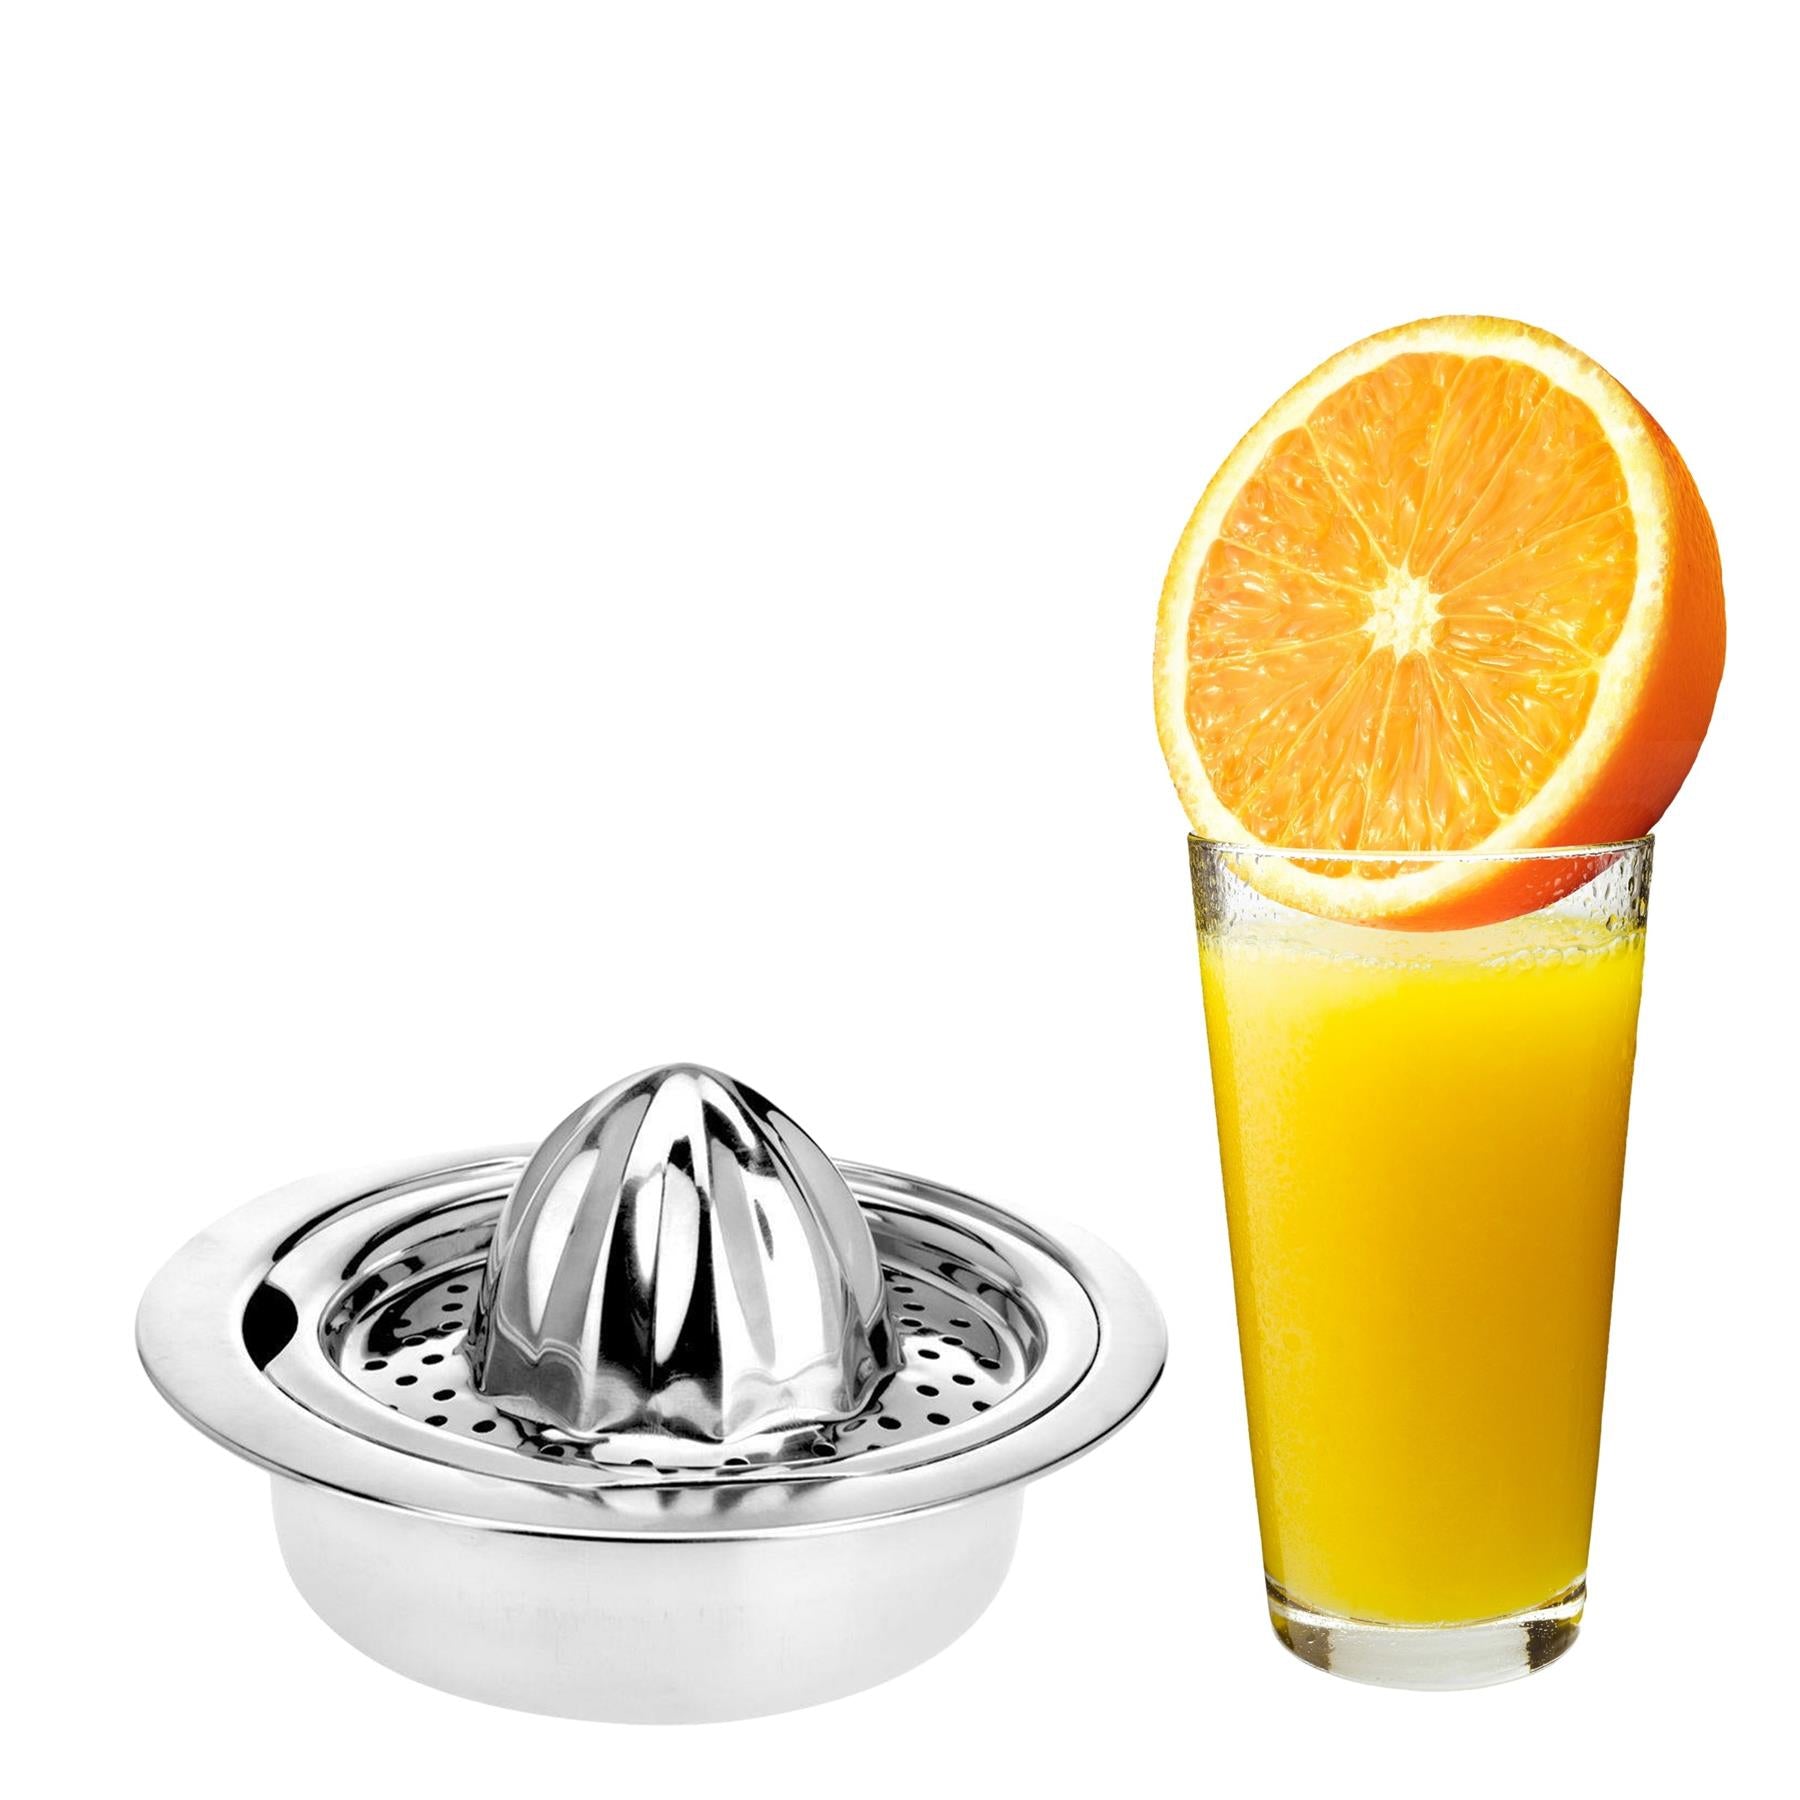 Citrus Press Fruit Juicer by Geezy - UKBuyZone